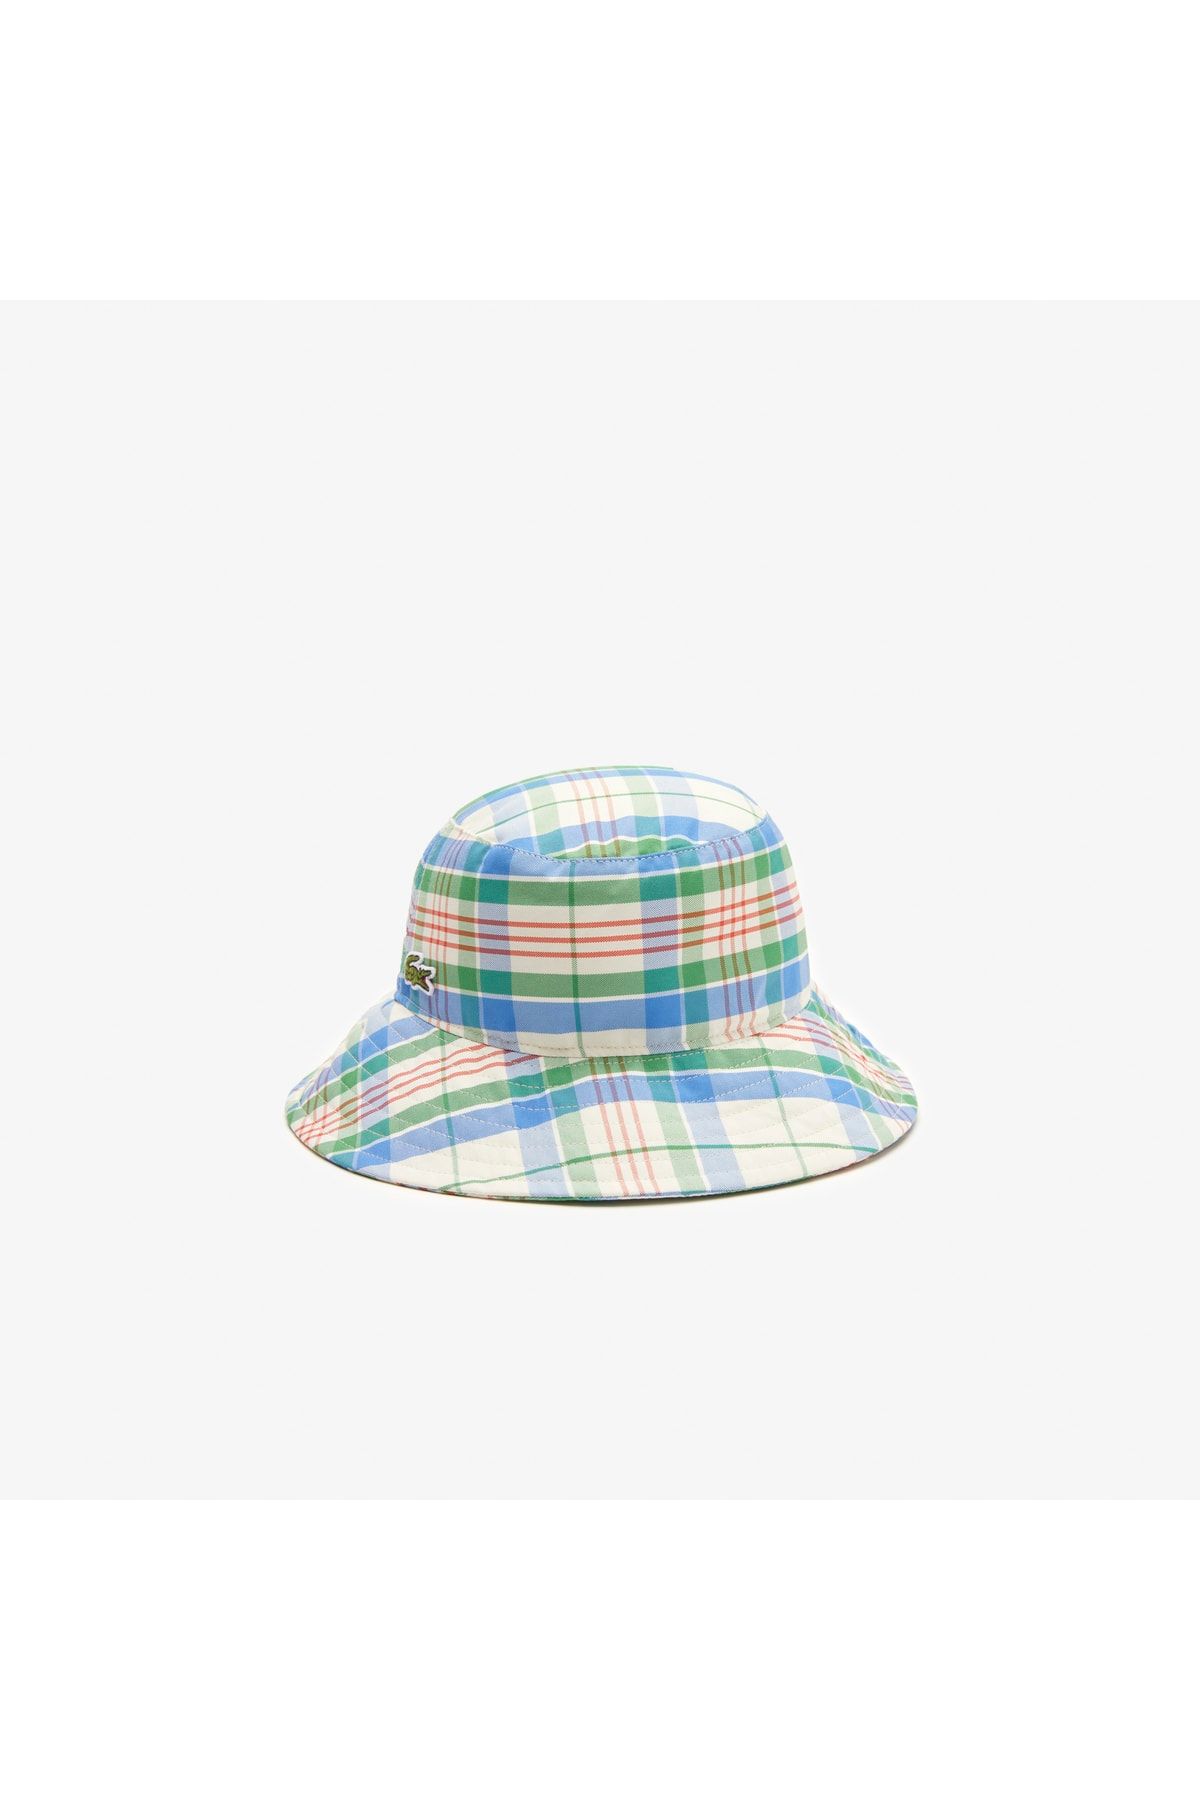 Lacoste Heritage Kadın Desenli Renkli Şapka